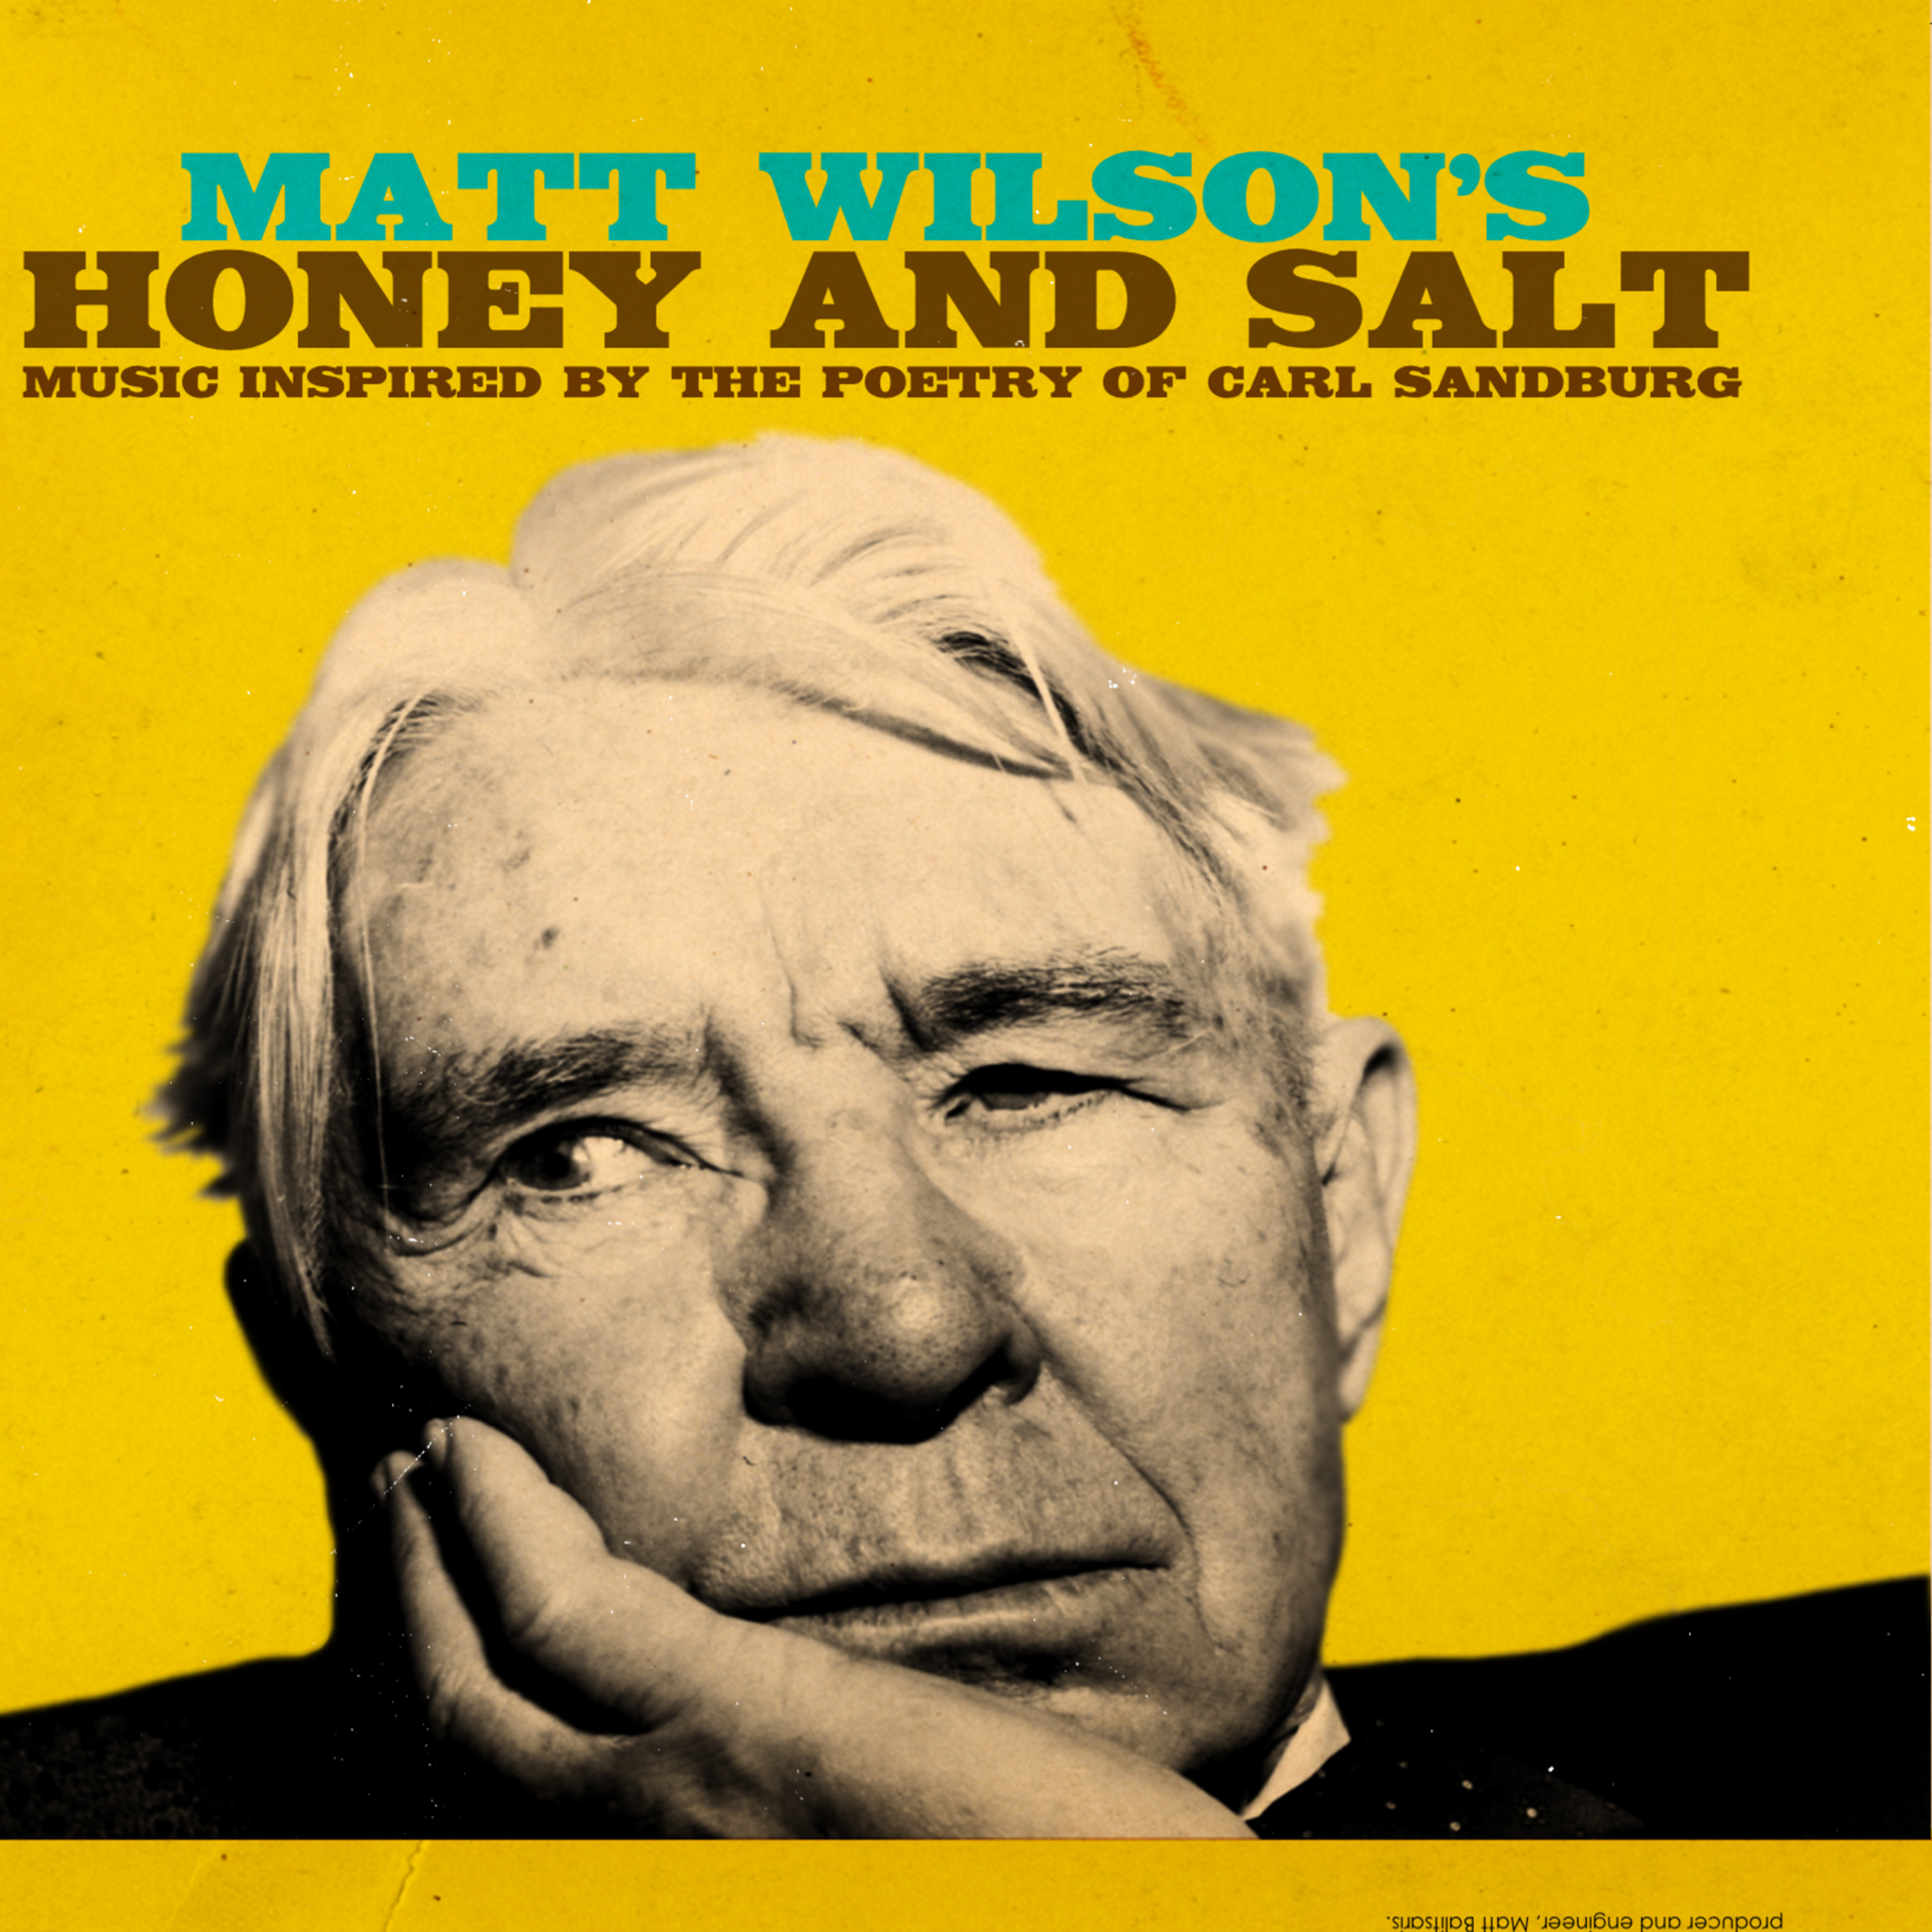 MATT WILSON RELEASES ‘HONEY & SALT’ INSPIRED BY THE POETRY OF CARL SANDBURG